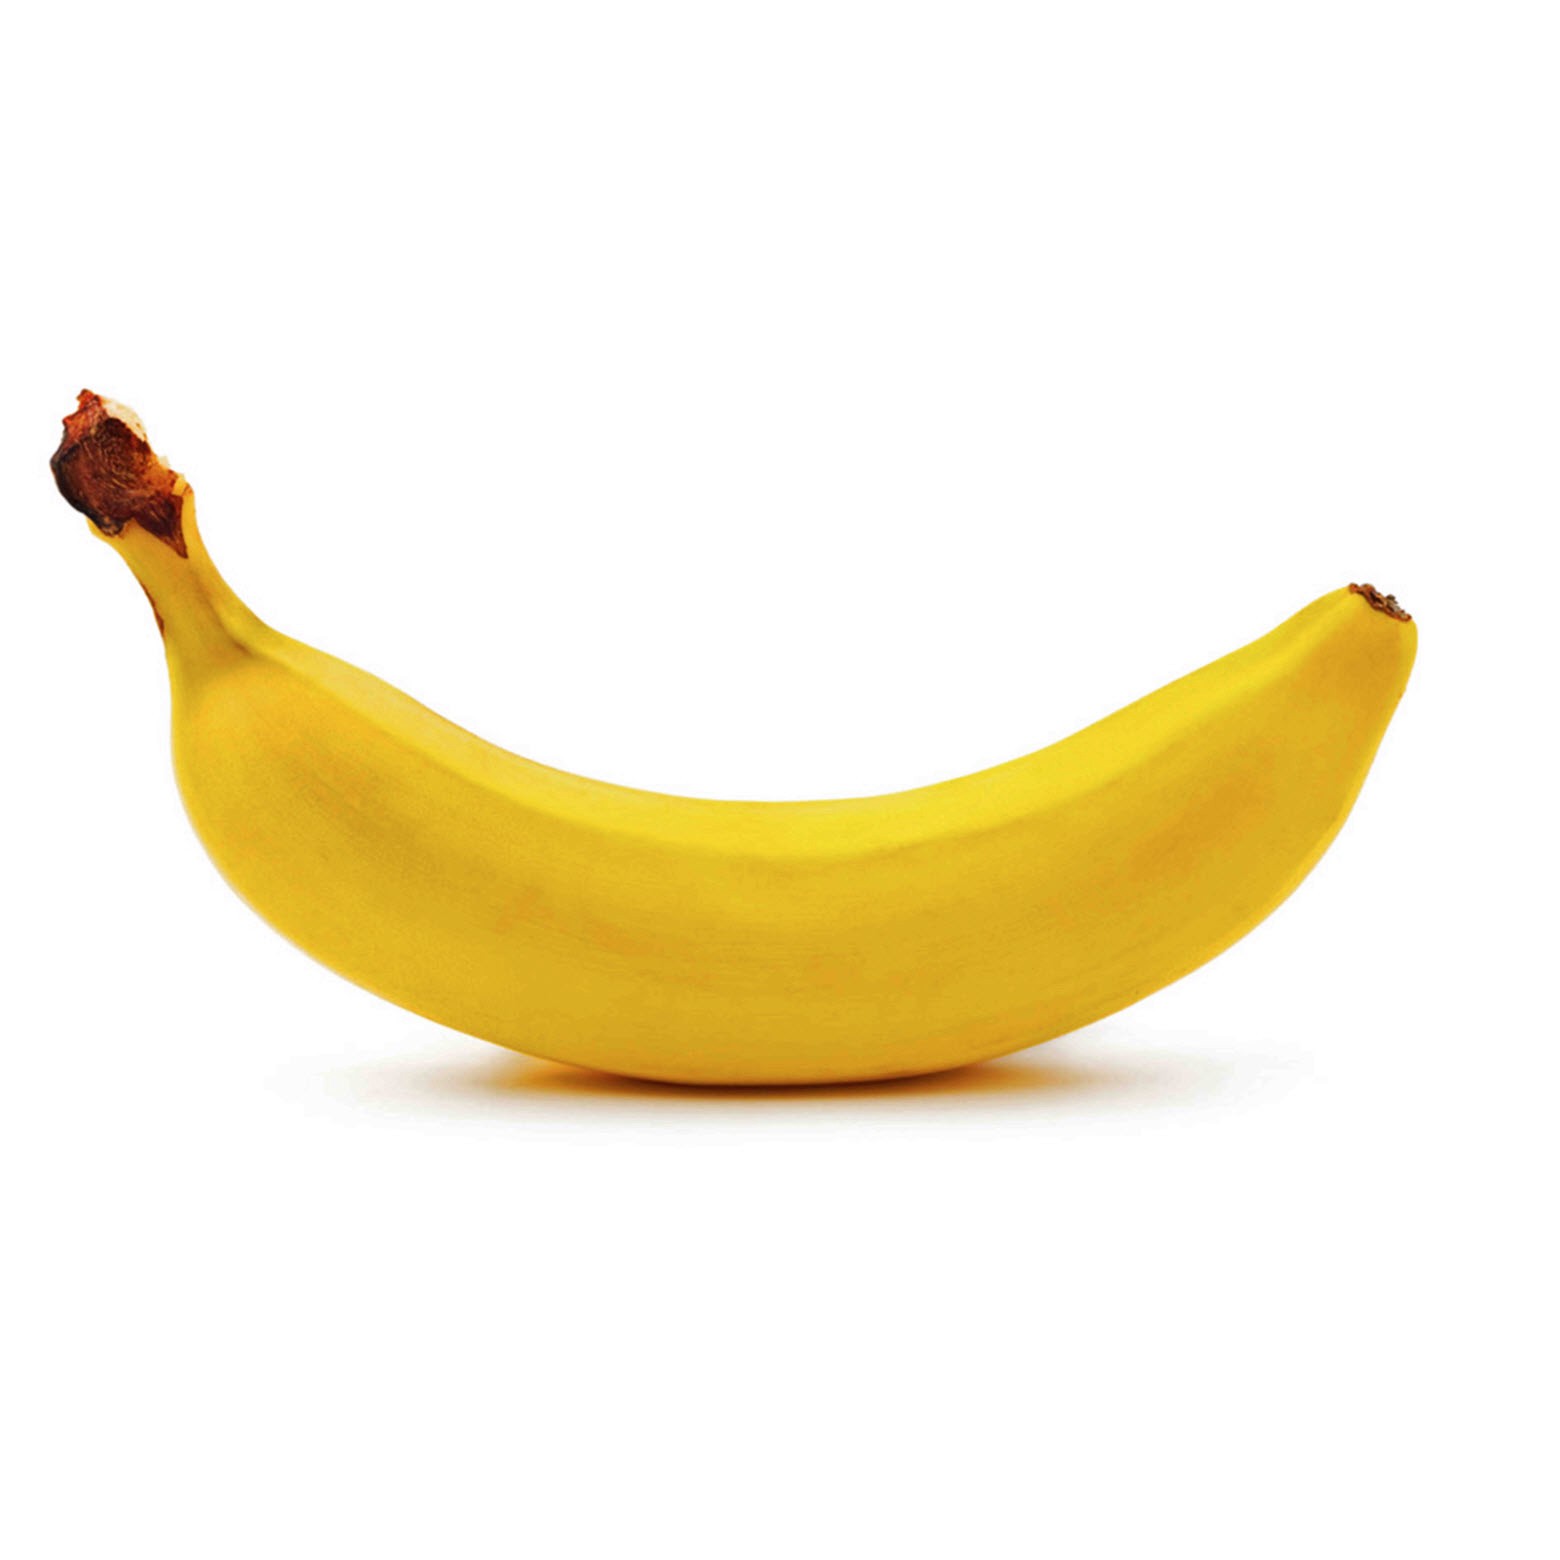 slide 1 of 1, Organic Banana, 1 ct